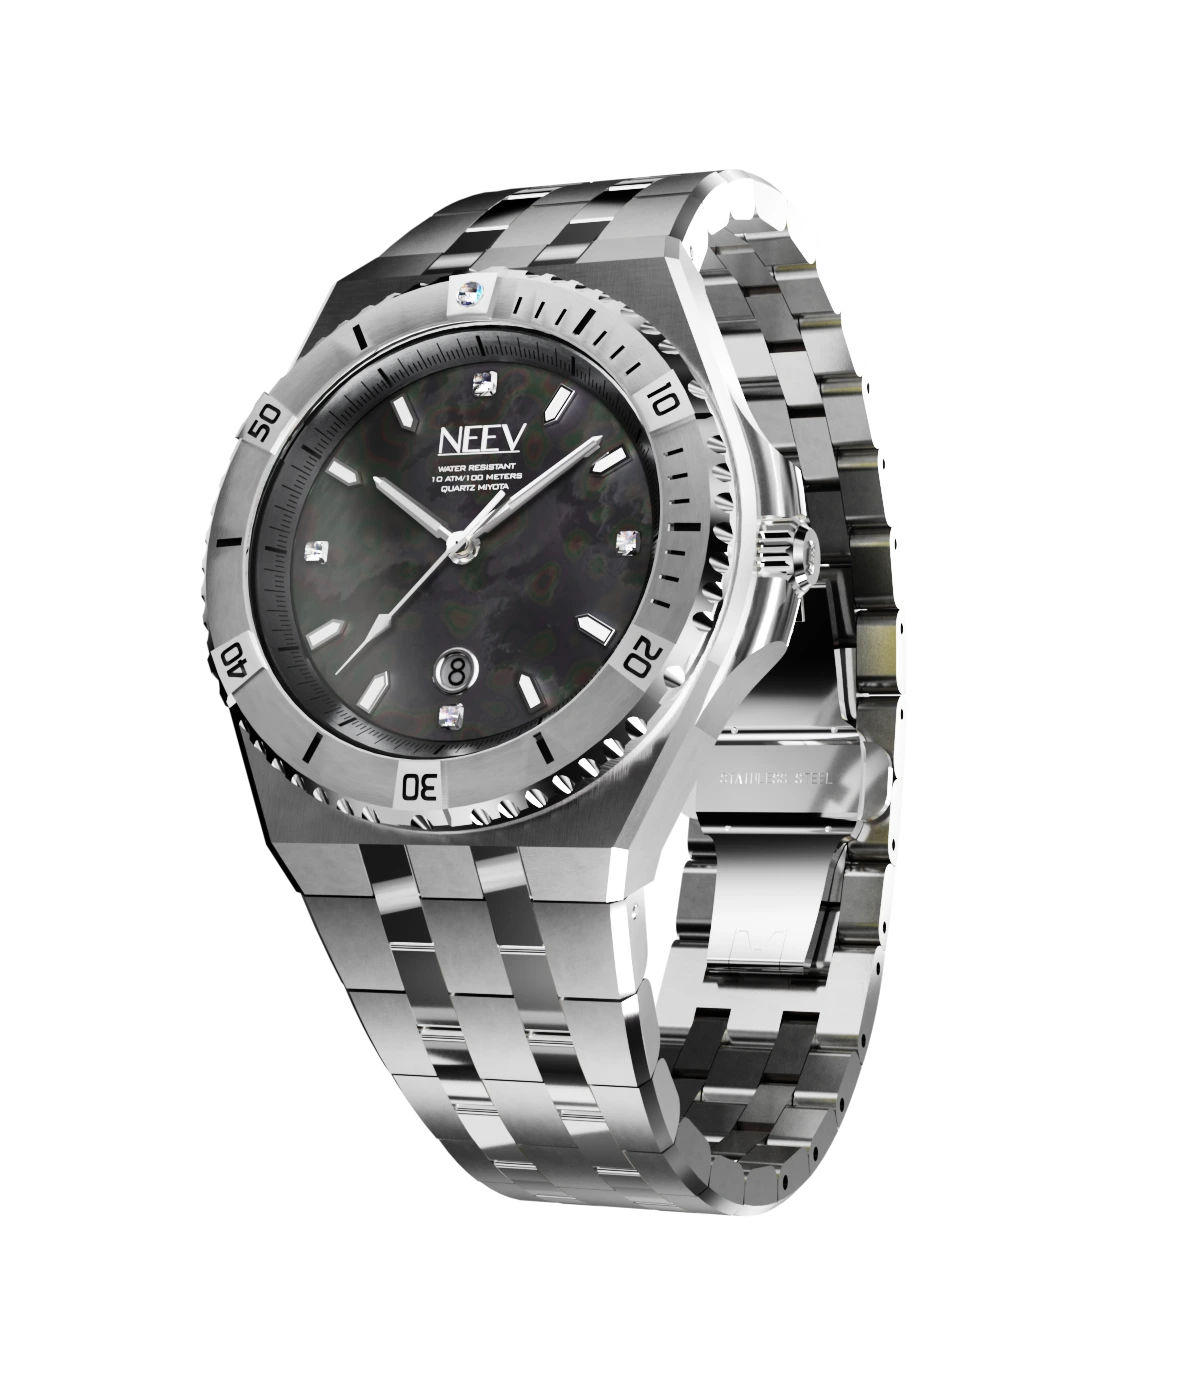 Nova watch